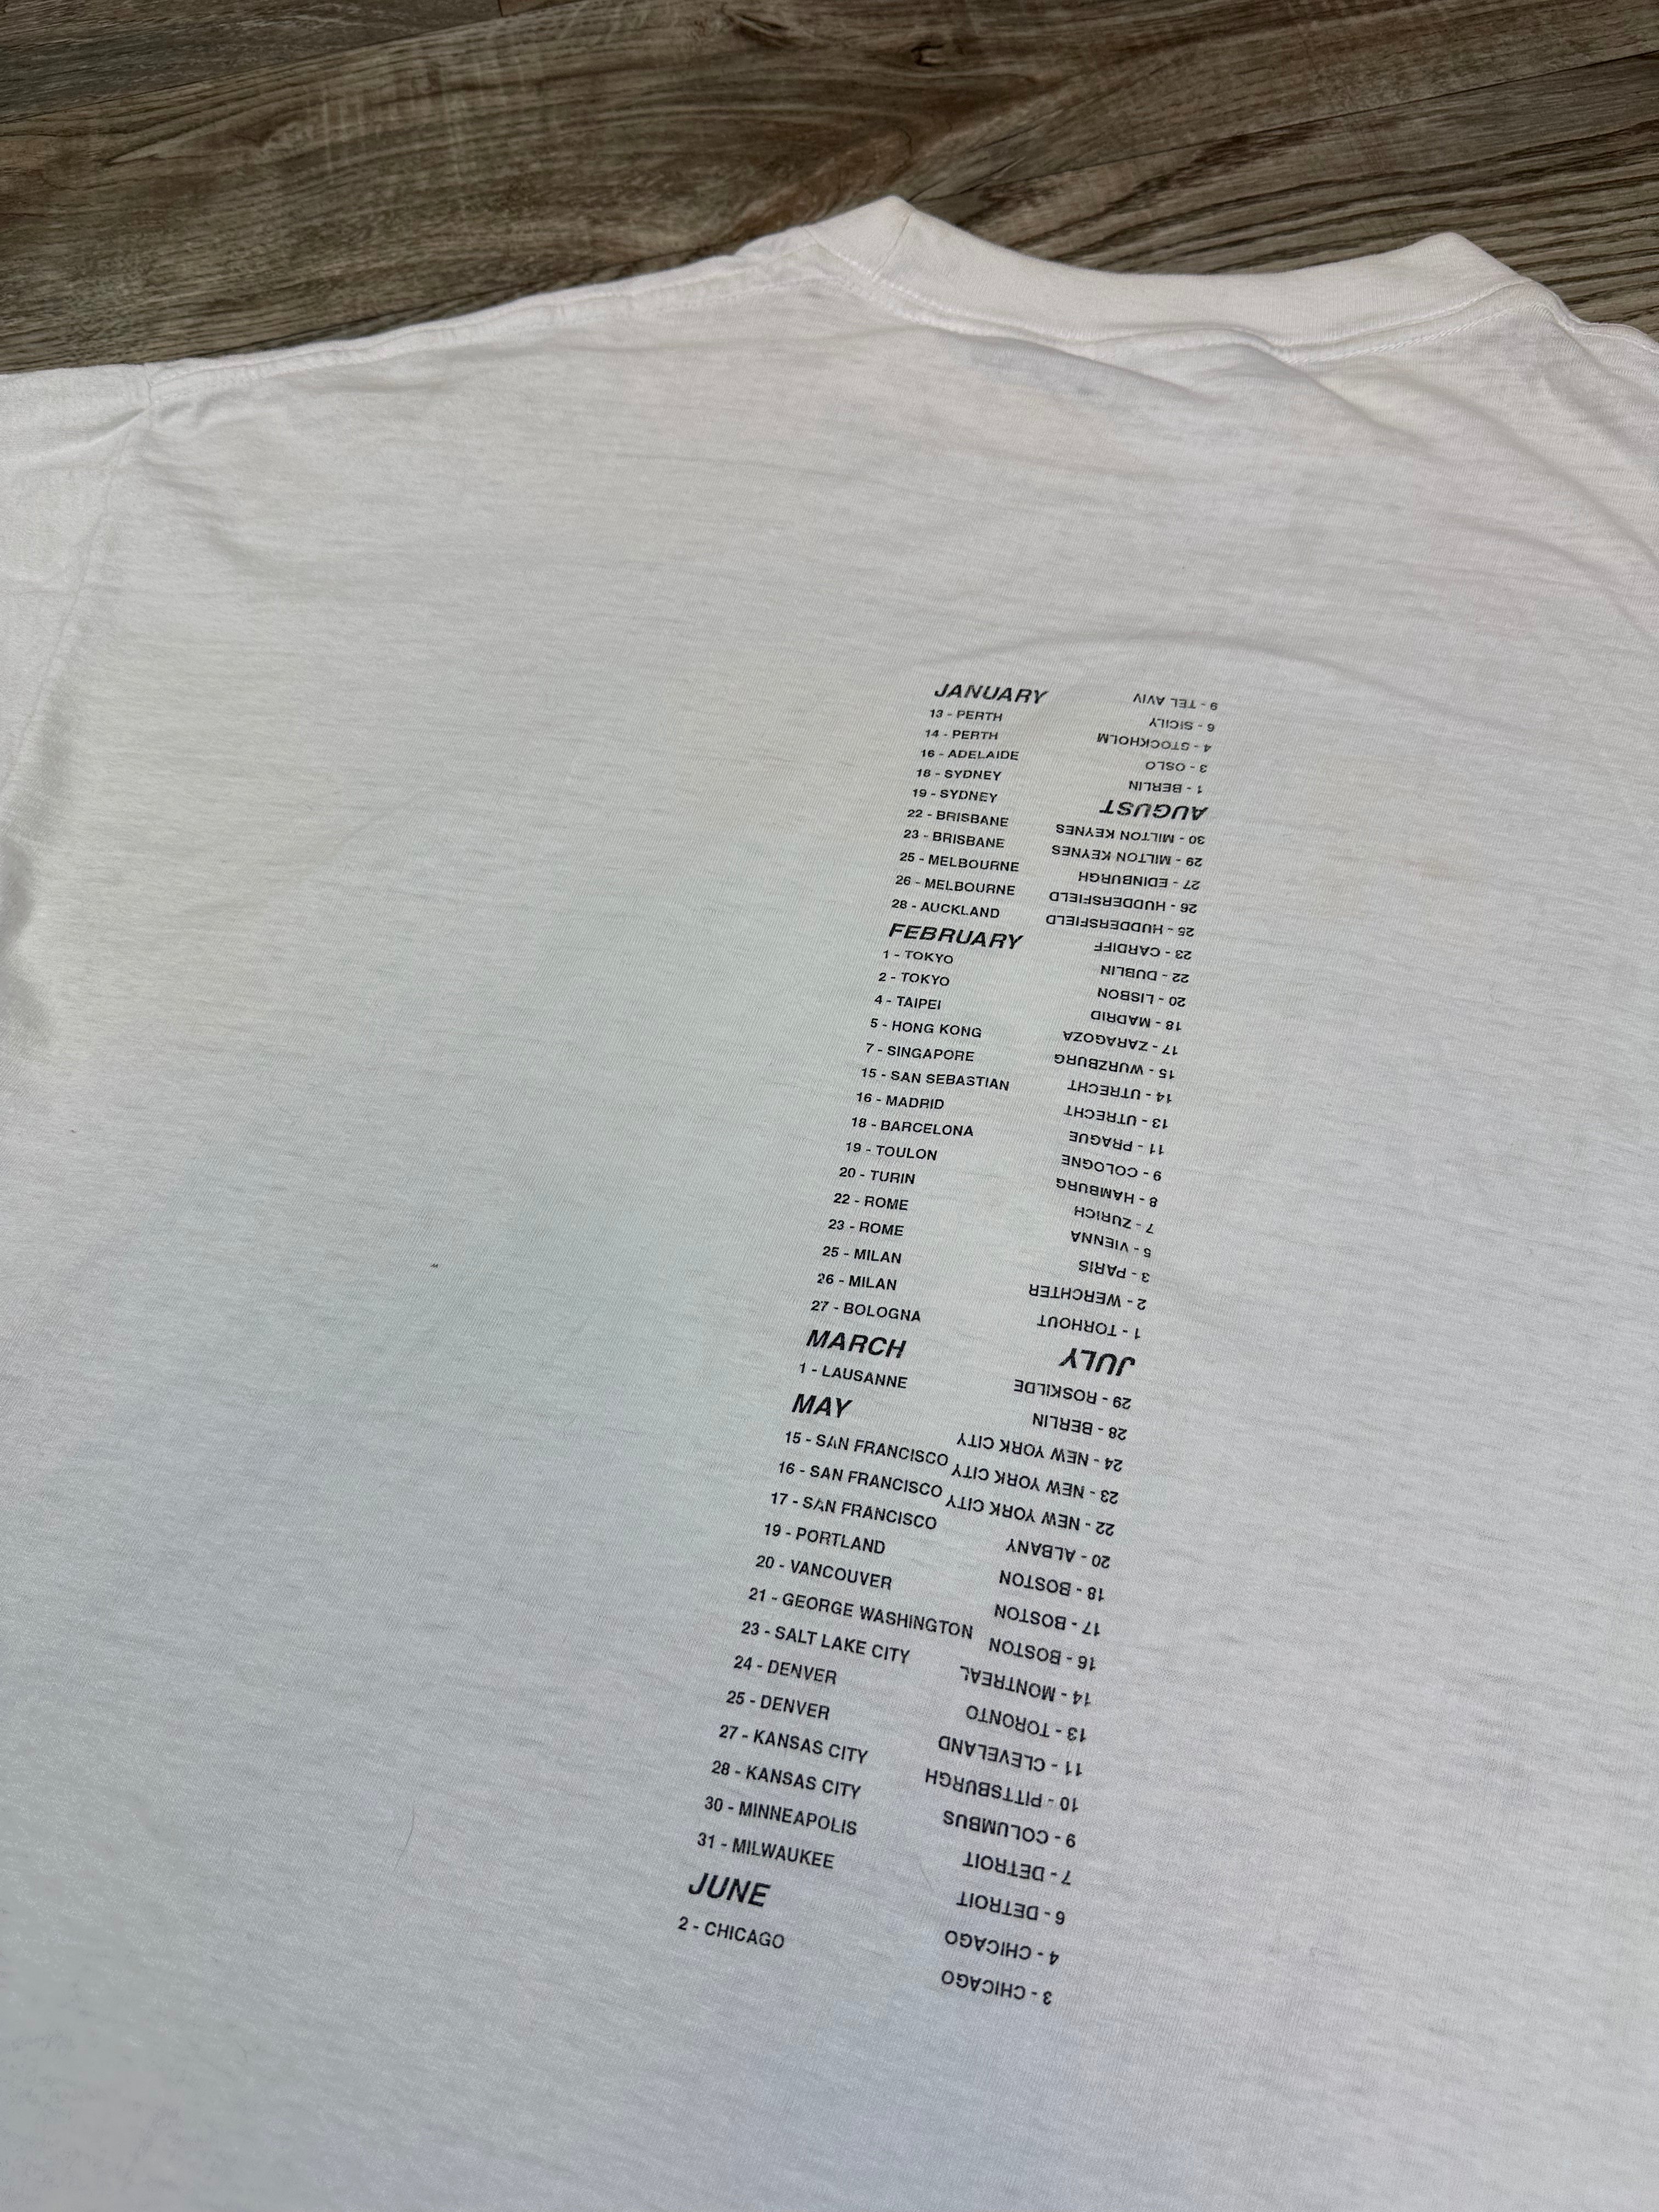 Vintage R.E.M. Monster 1995 t-shirt - size XL